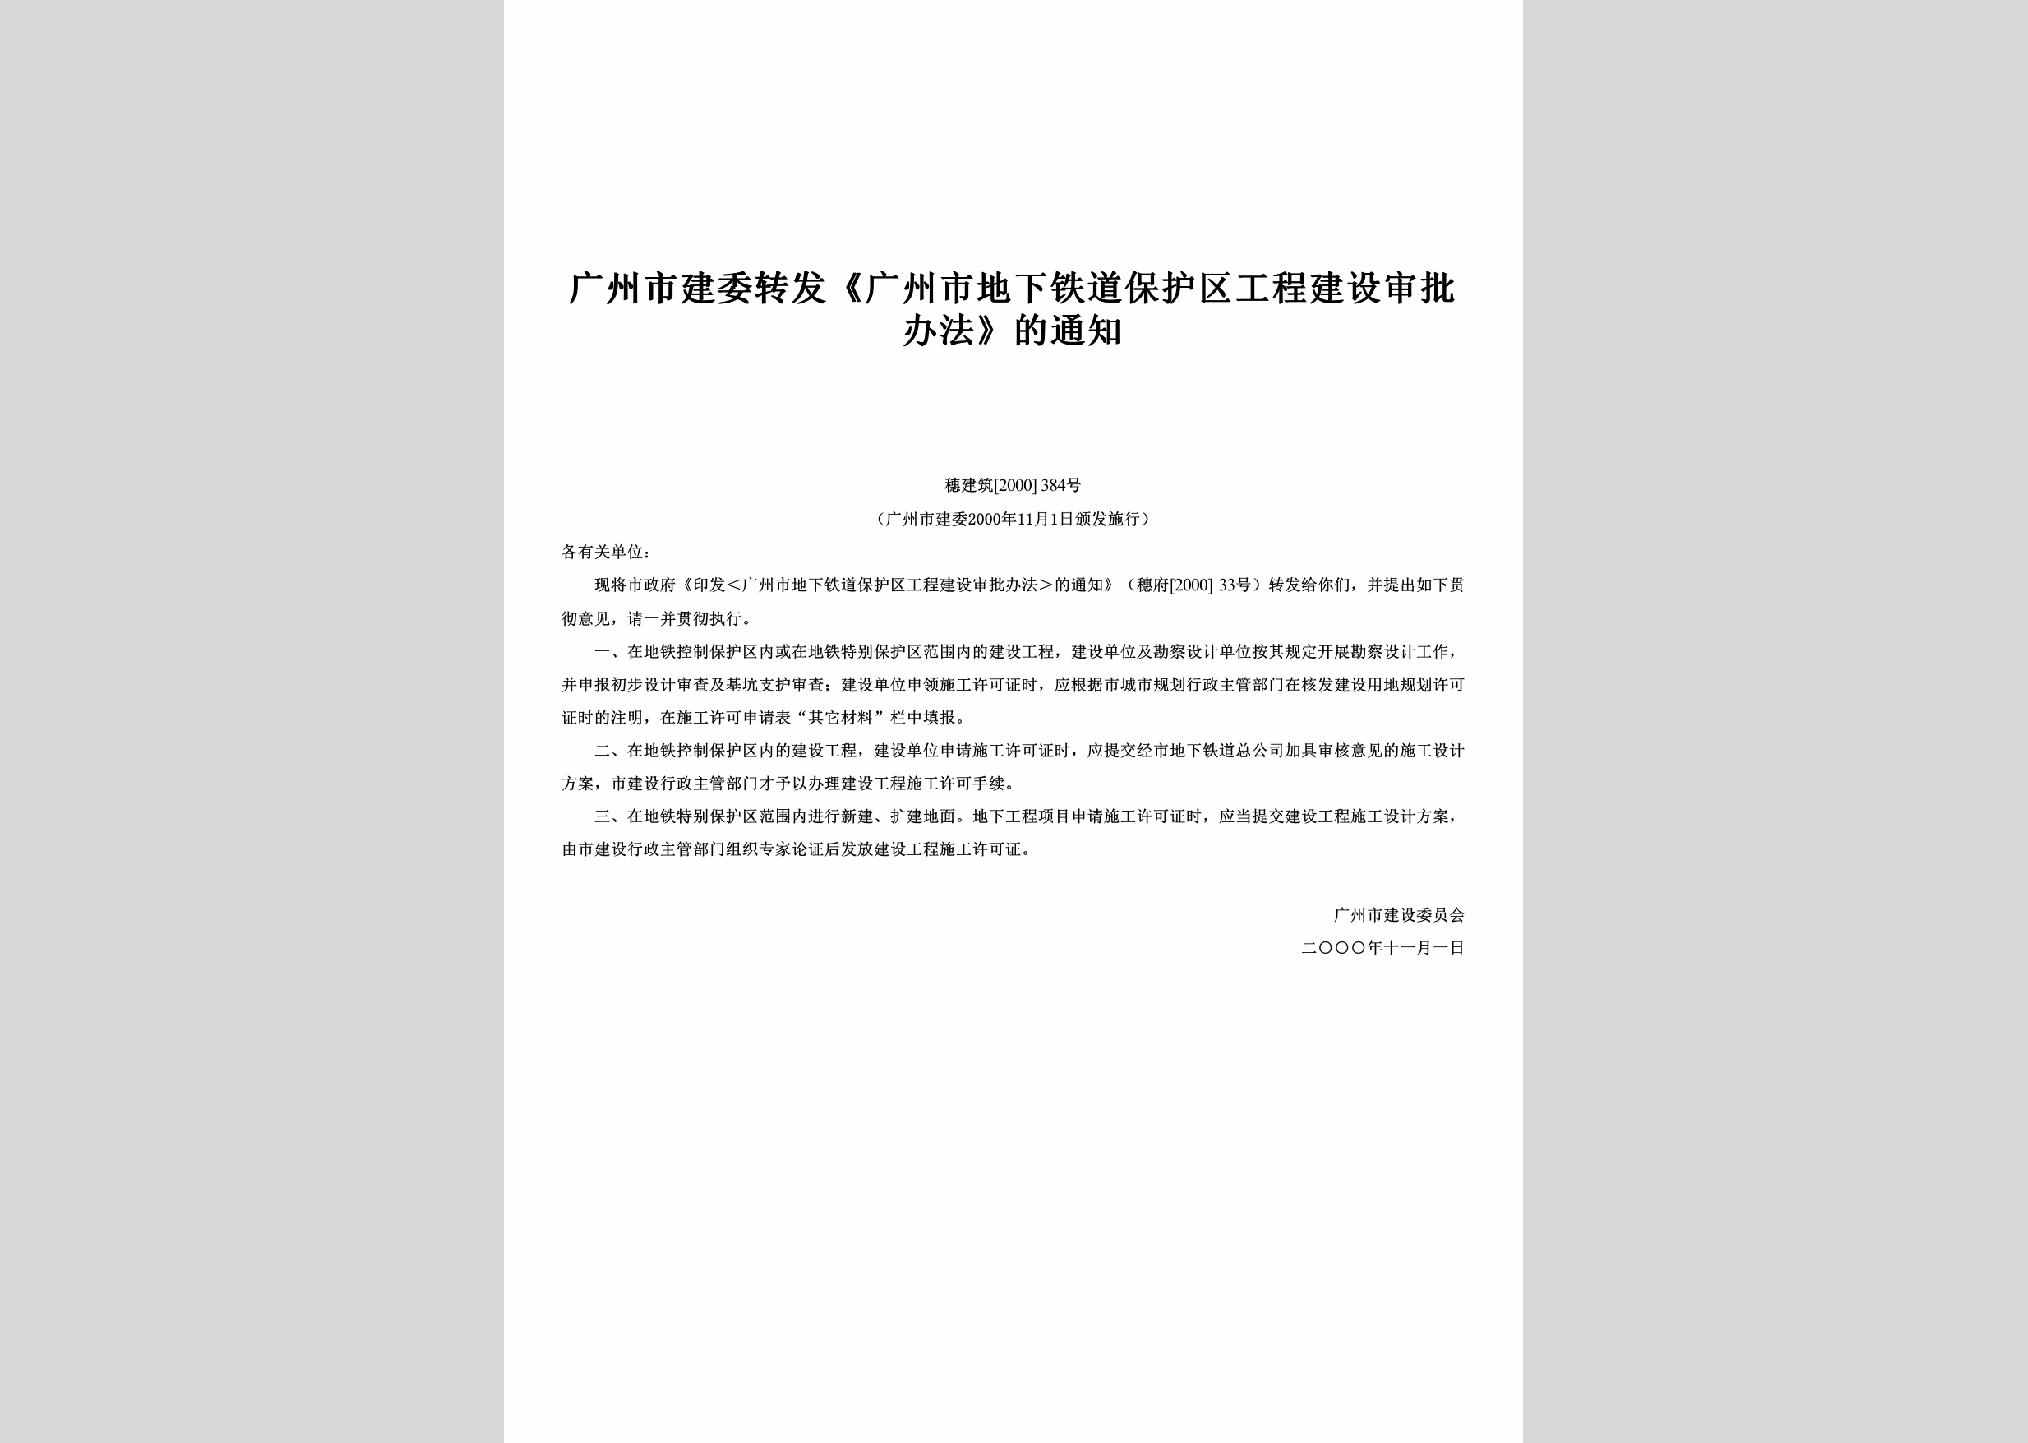 穗建筑[2000]384号：转发《广州市地下铁道保护区工程建设审批办法》的通知